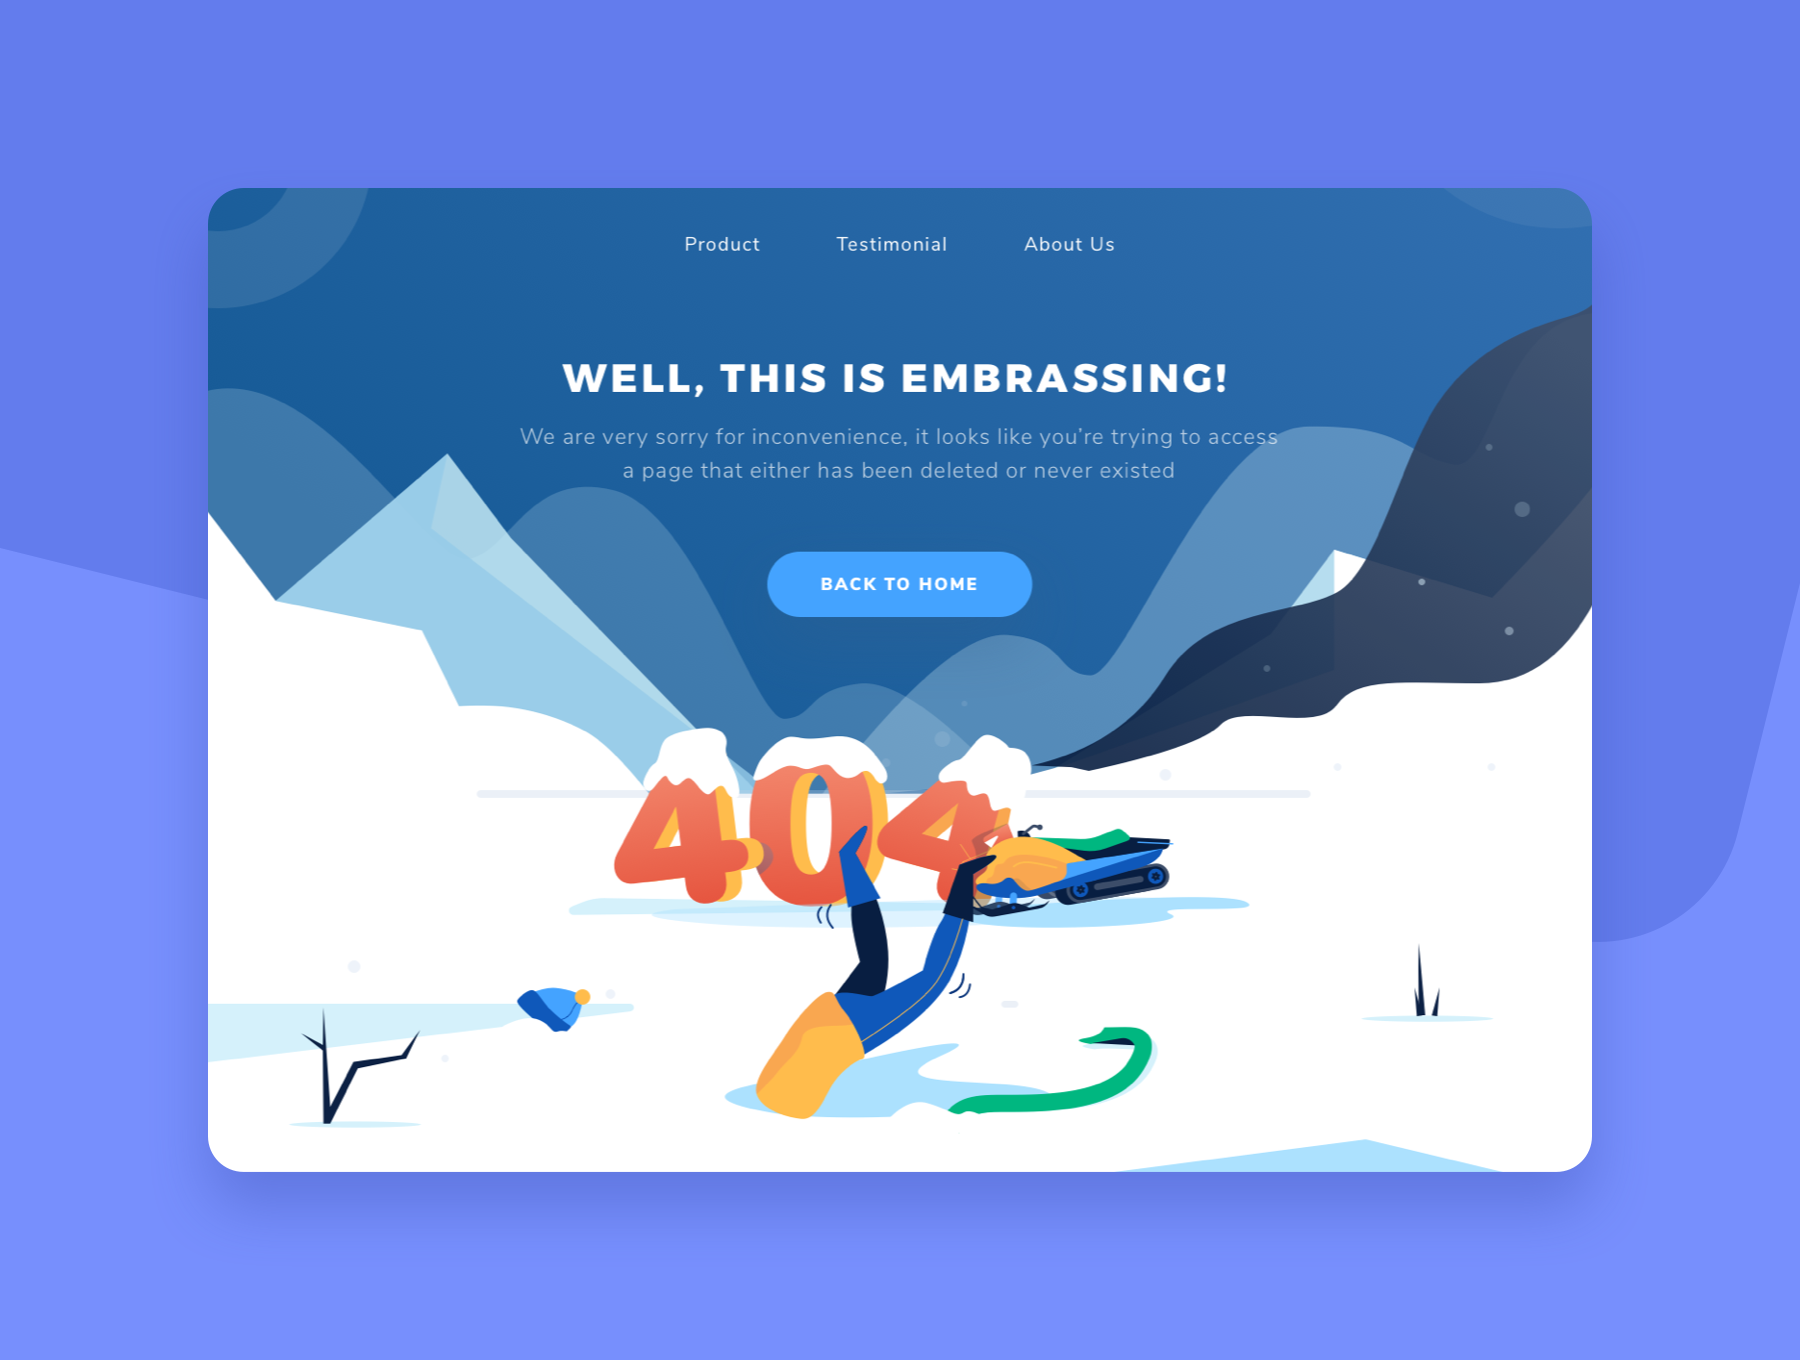 大洋岛下午茶：冬季雪地主题网站404错误页面矢量插画素材插图5